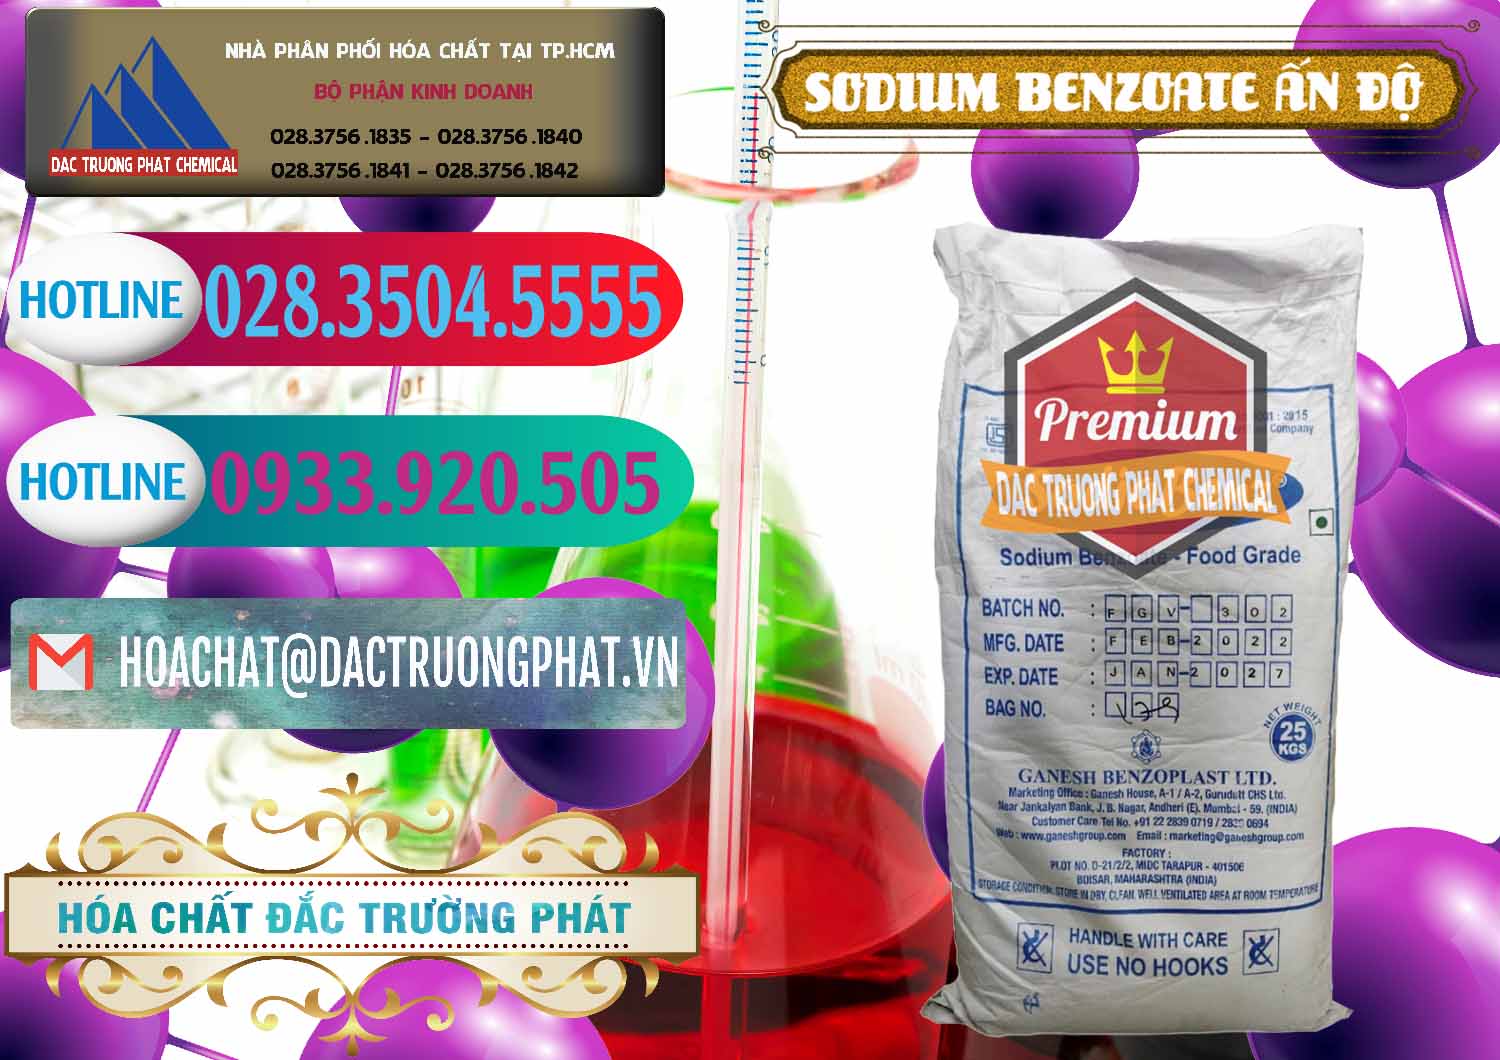 Cty cung cấp _ bán Sodium Benzoate - Mốc Bột Ấn Độ India - 0361 - Nơi cung cấp & kinh doanh hóa chất tại TP.HCM - truongphat.vn